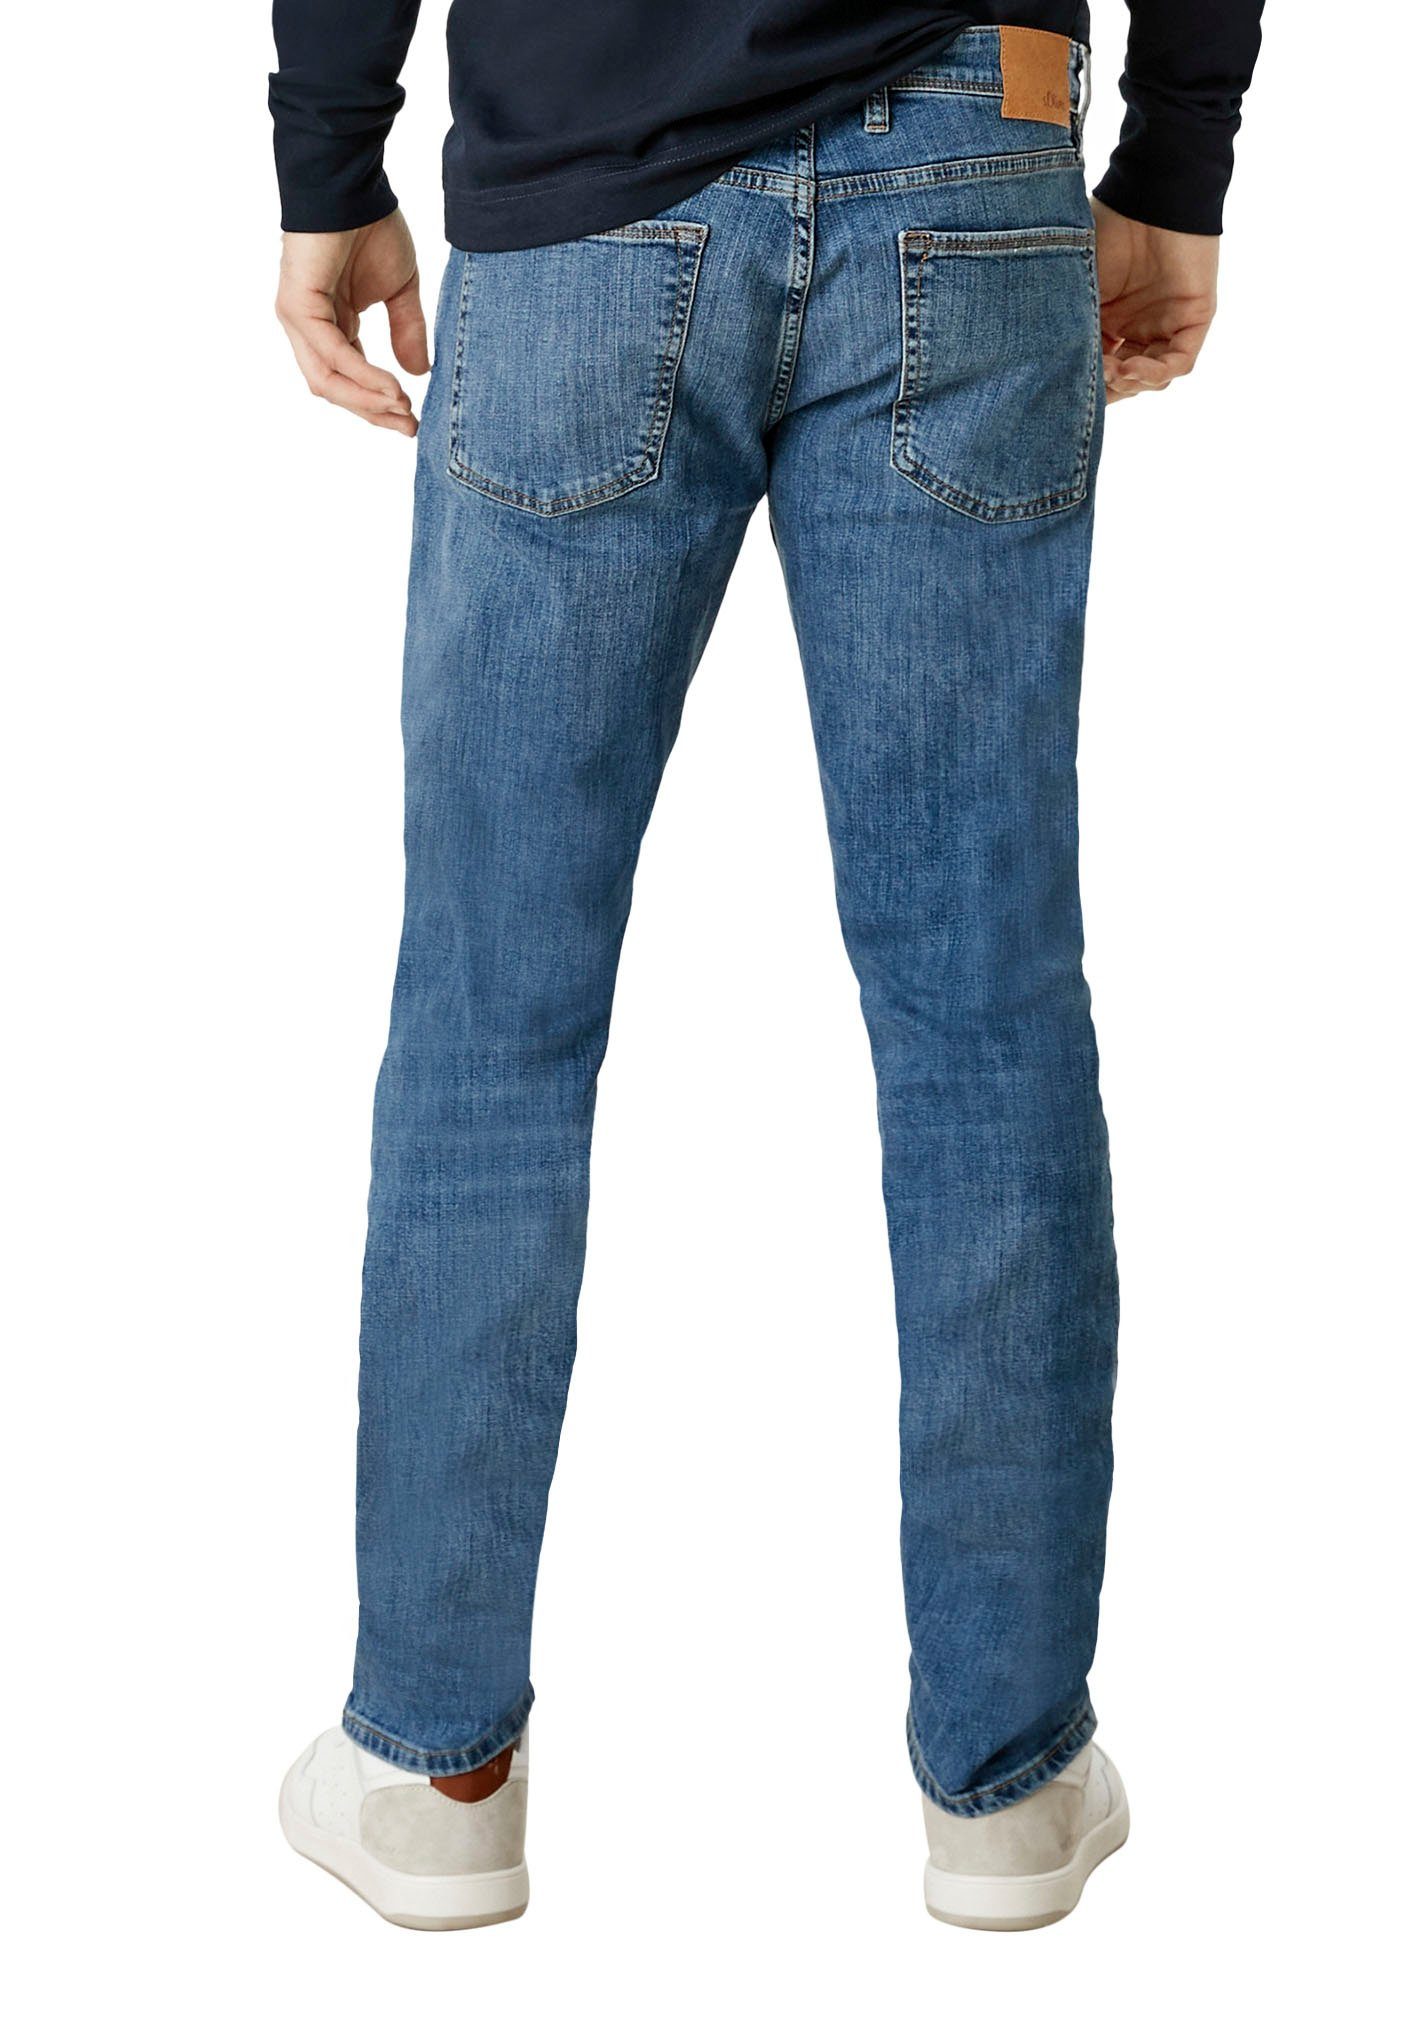 Waschung royalblau mit 5-Pocket-Jeans authentischer s.Oliver